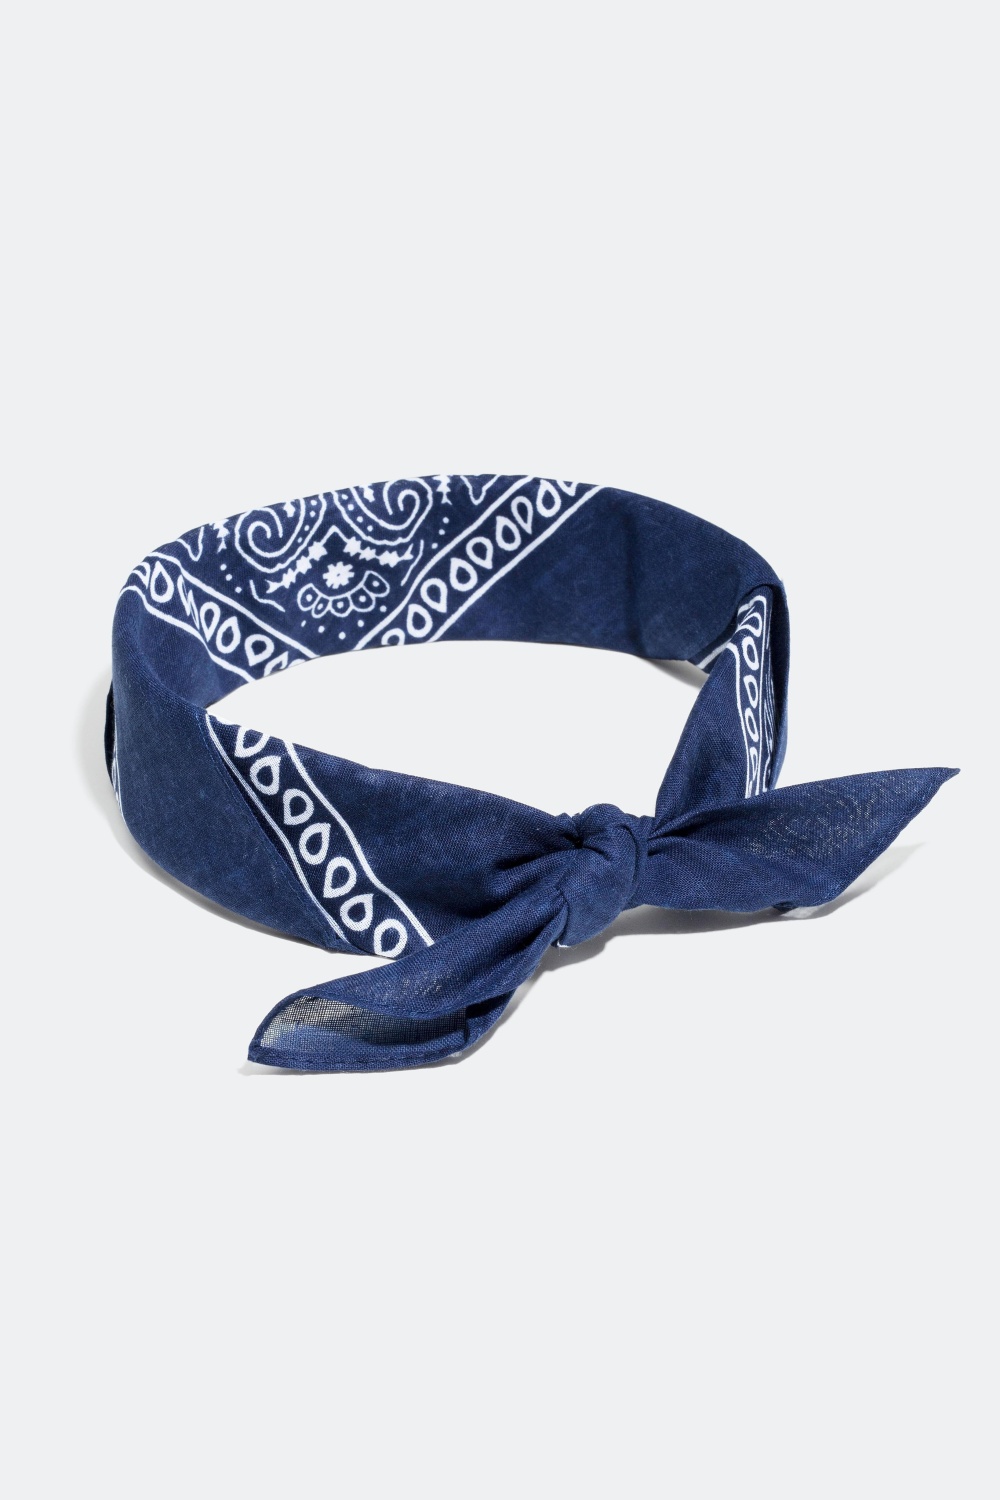 Mönstrad scarf, bandana i gruppen Håraccessoarer / Hårband hos Glitter (304192)